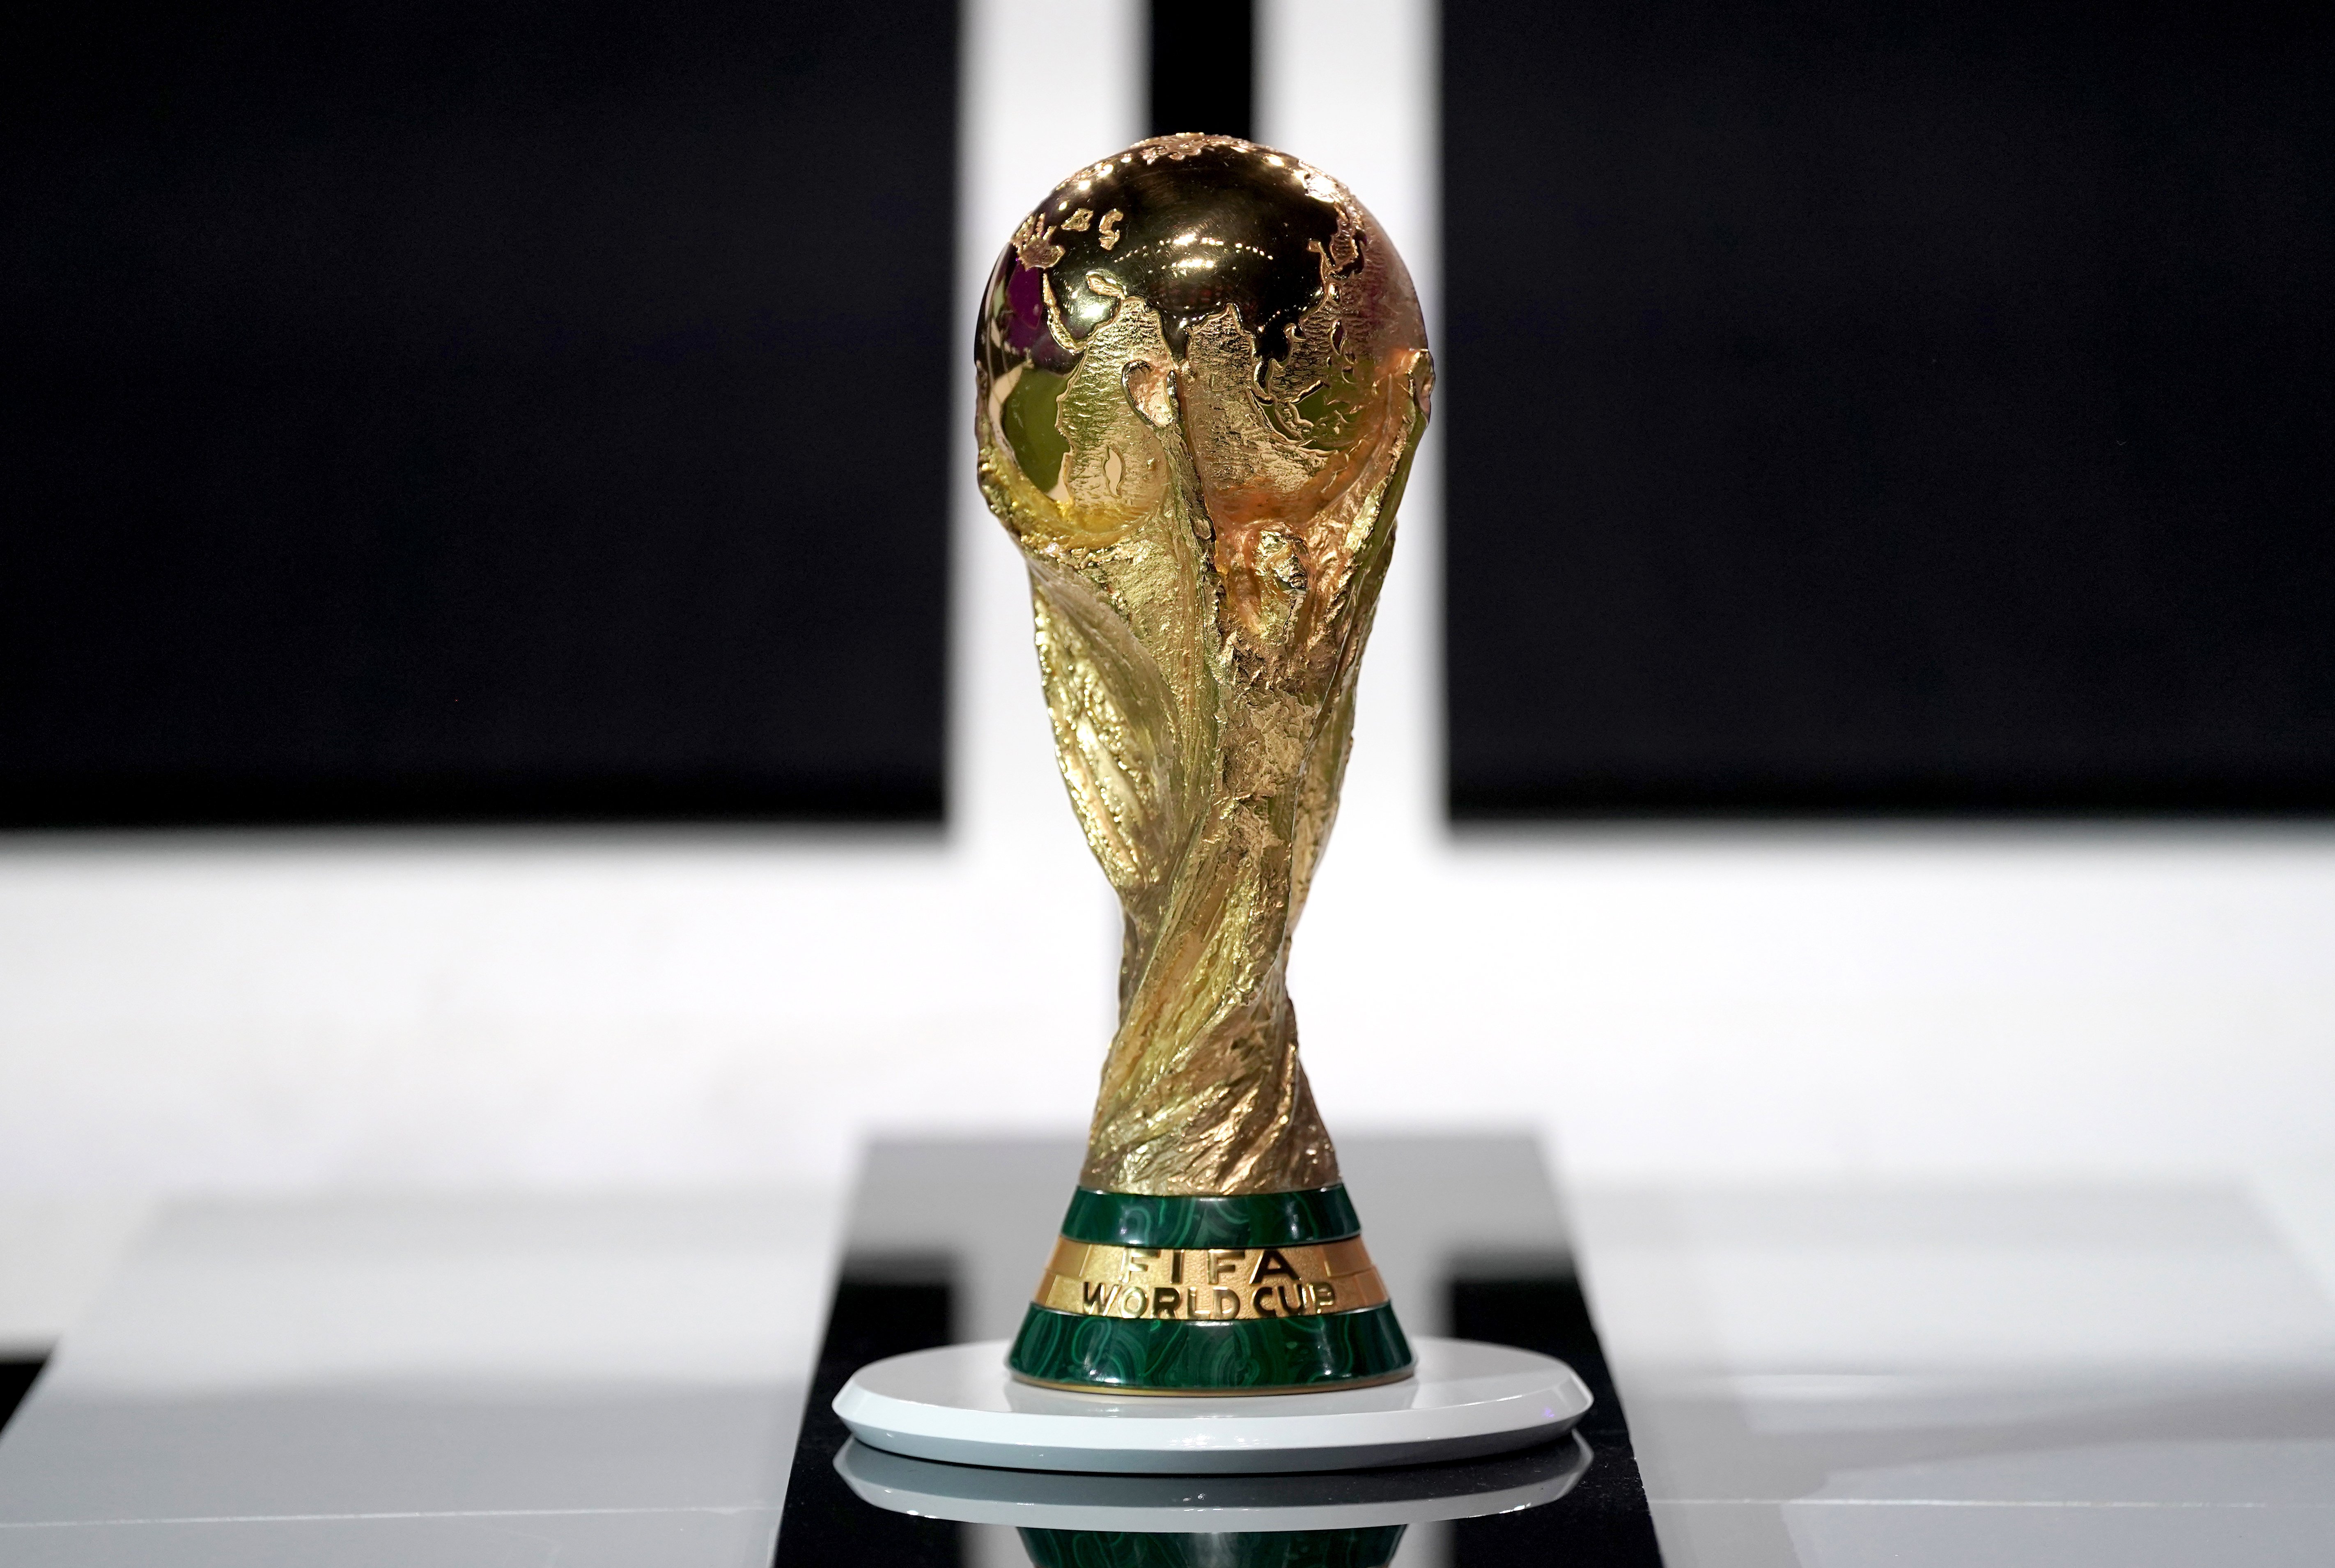 Grups del Mundial de Qatar 2022: les 32 seleccions que participaran en el torneig